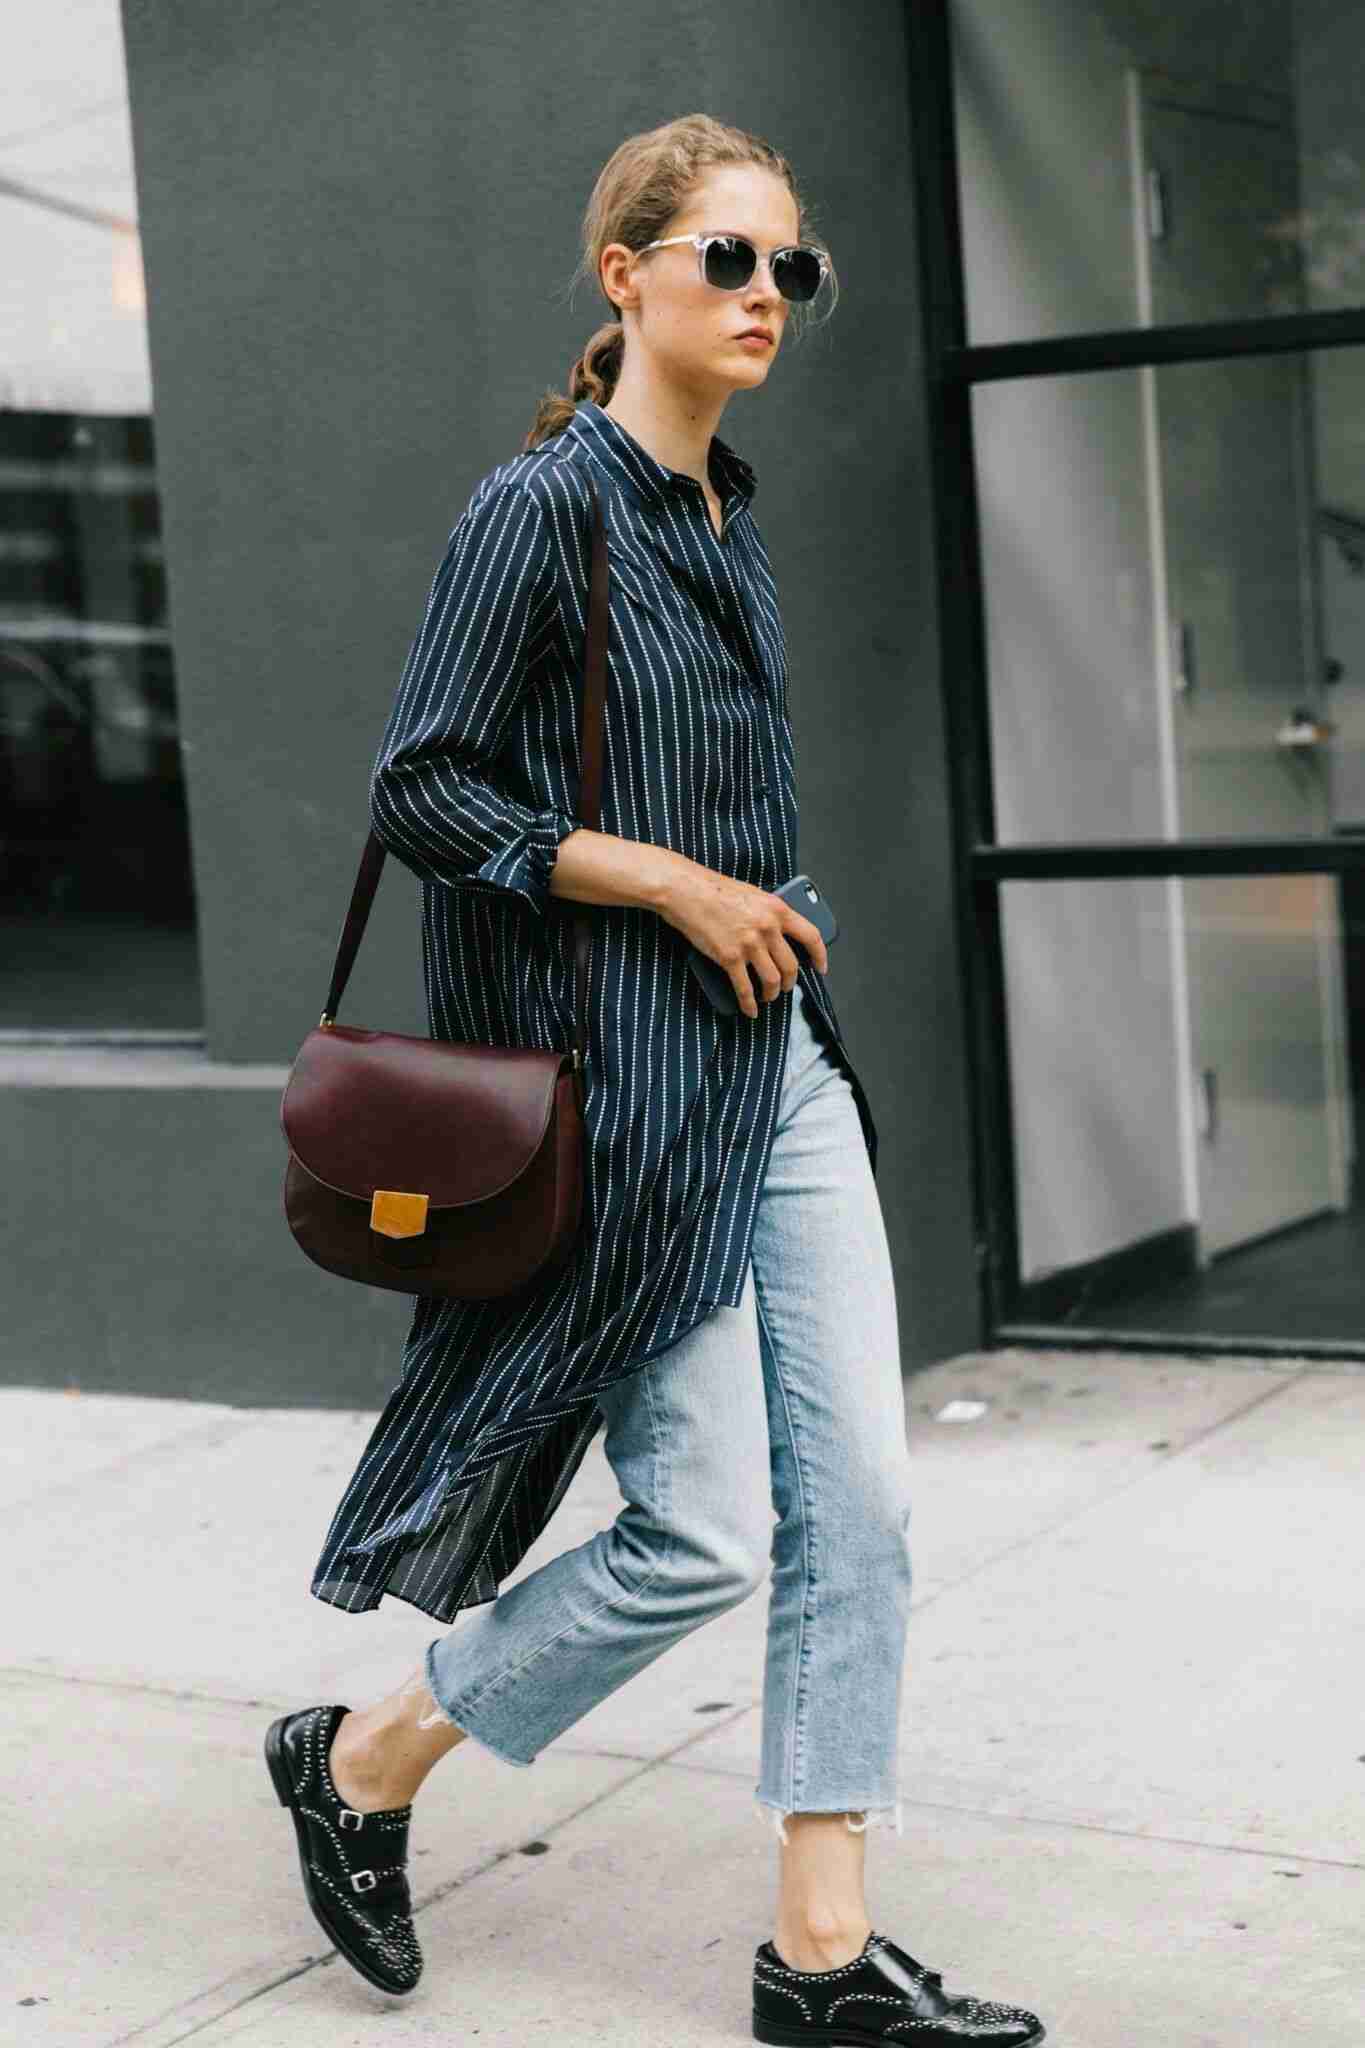 Calça jeans da mamãe combinam camisa longa superdimensionada, sapatos de couro, bolsa, as últimas tendências da moda feminina